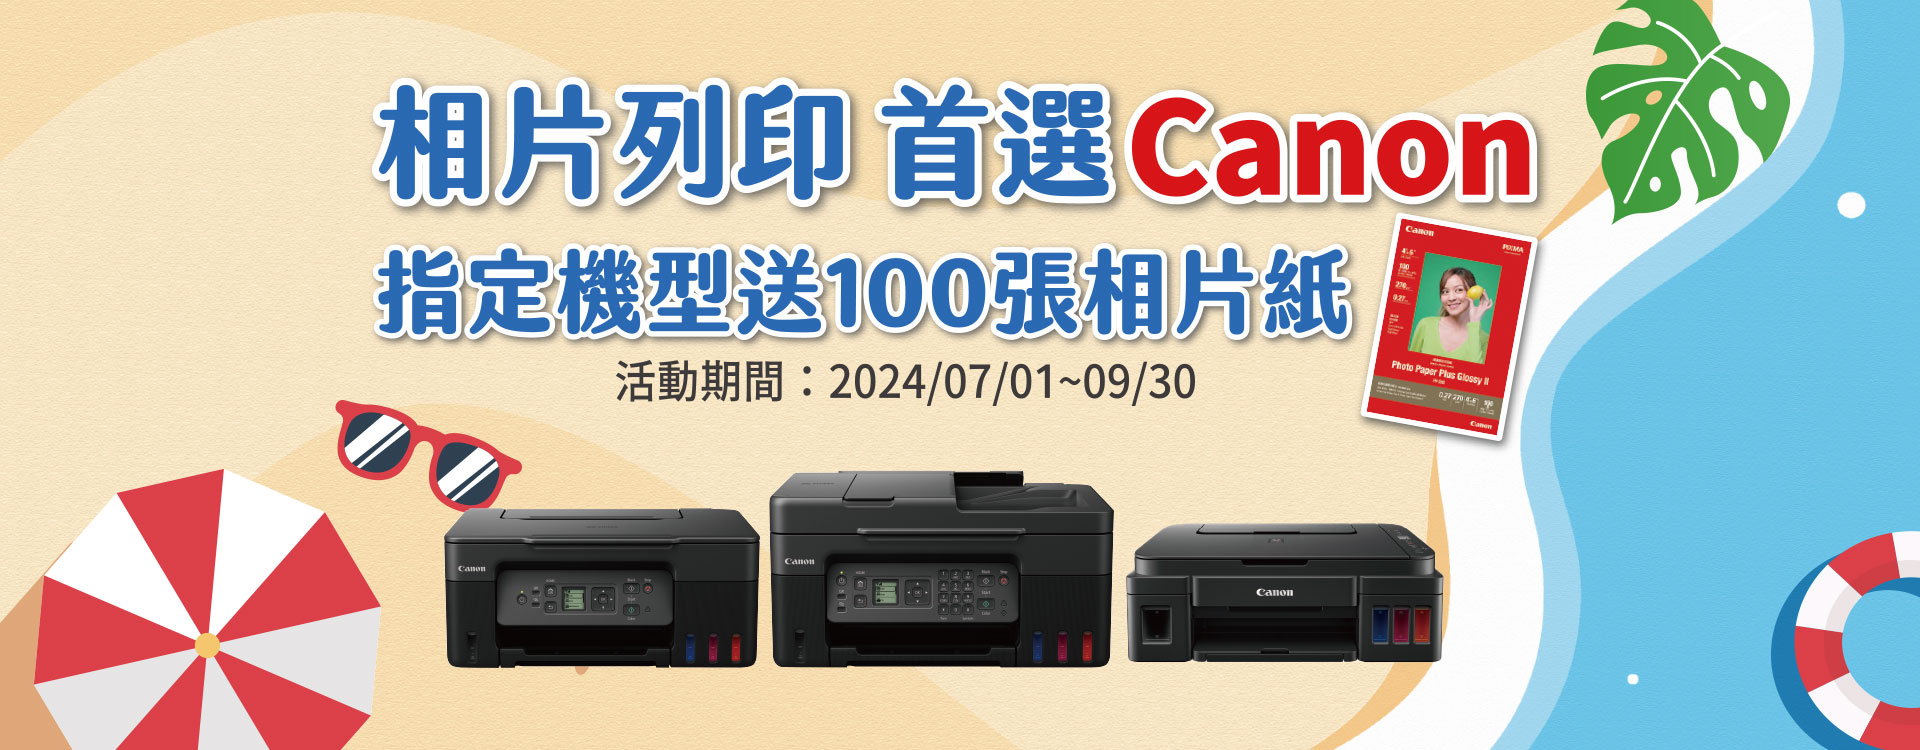 1920x750-printer.jpg